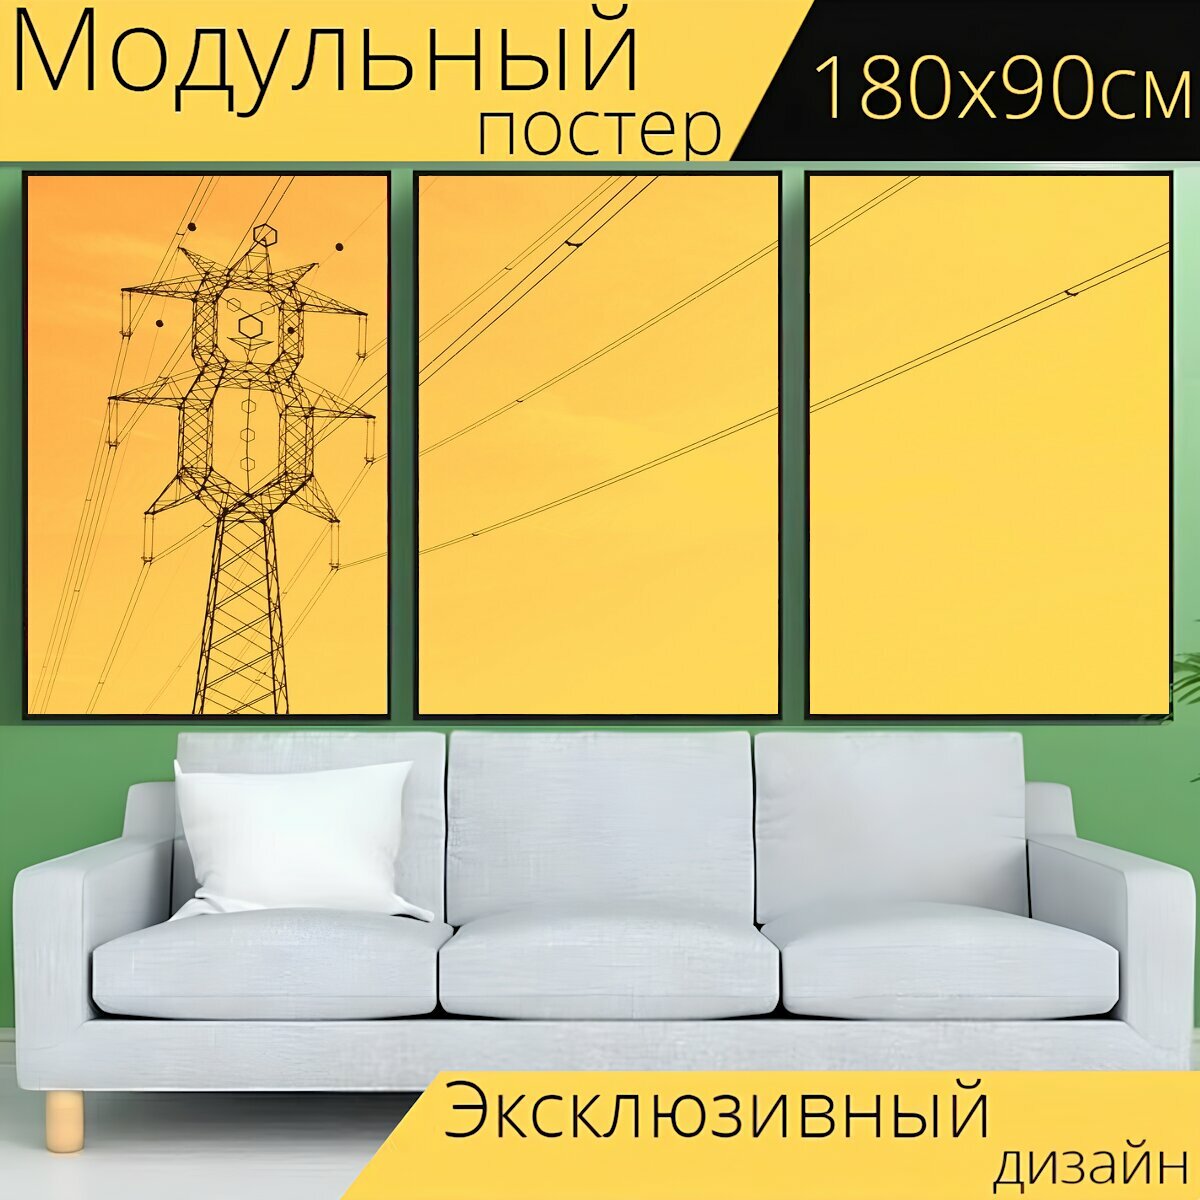 Модульный постер "Высокое напряжение, ток, электричество" 180 x 90 см. для интерьера